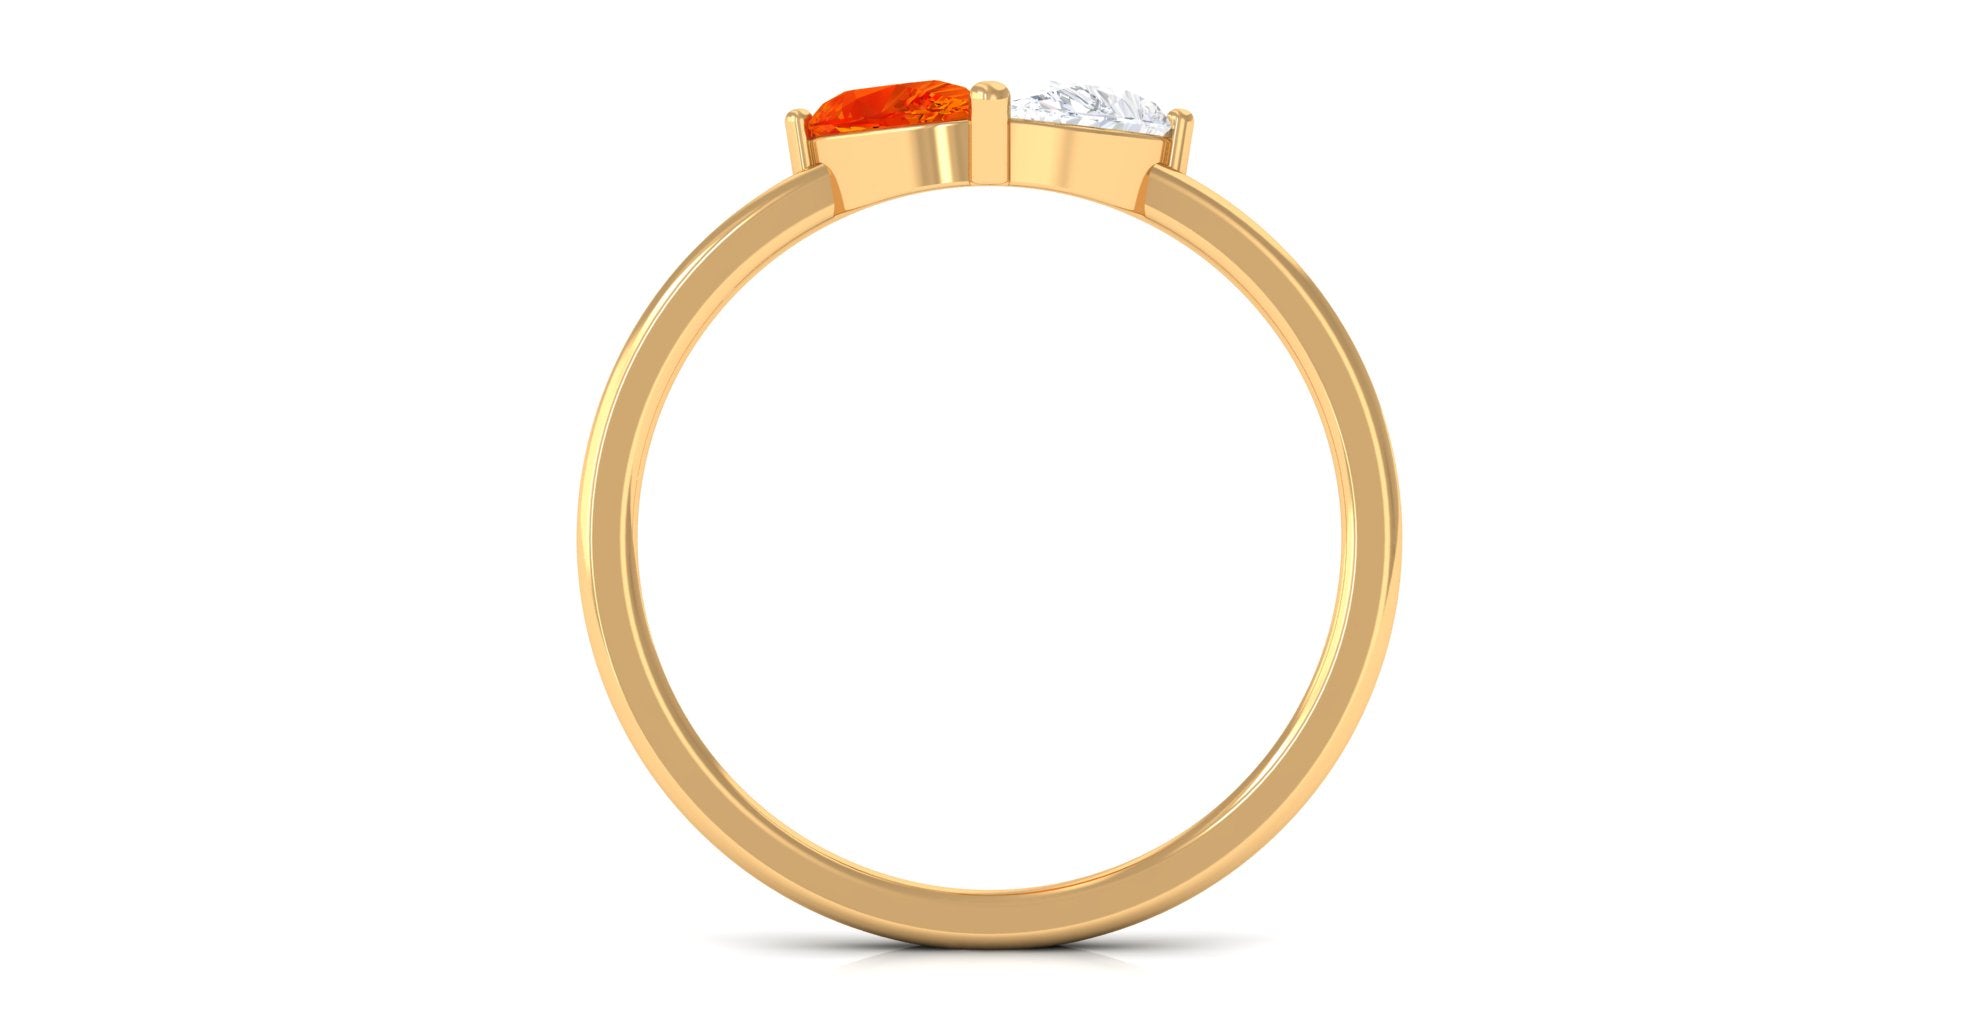 Created Orange Sapphire Toi Et Moi Ring Lab Created Orange Sapphire - ( AAAA ) - Quality - Rosec Jewels